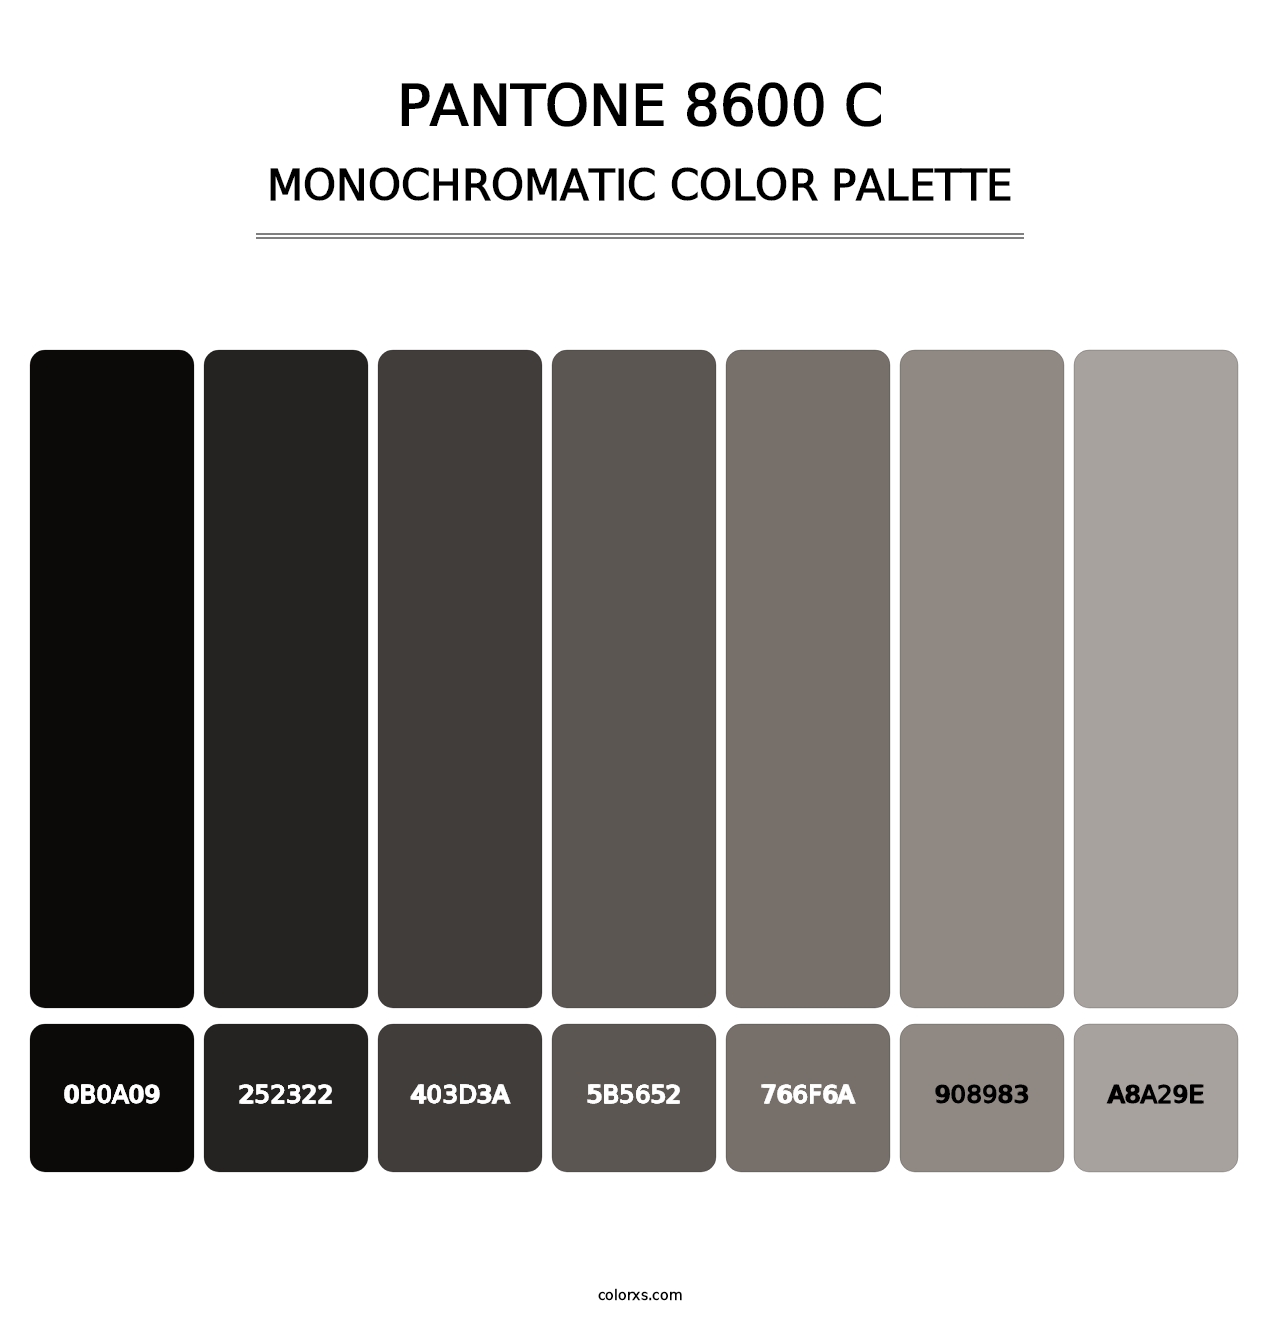 PANTONE 8600 C - Monochromatic Color Palette